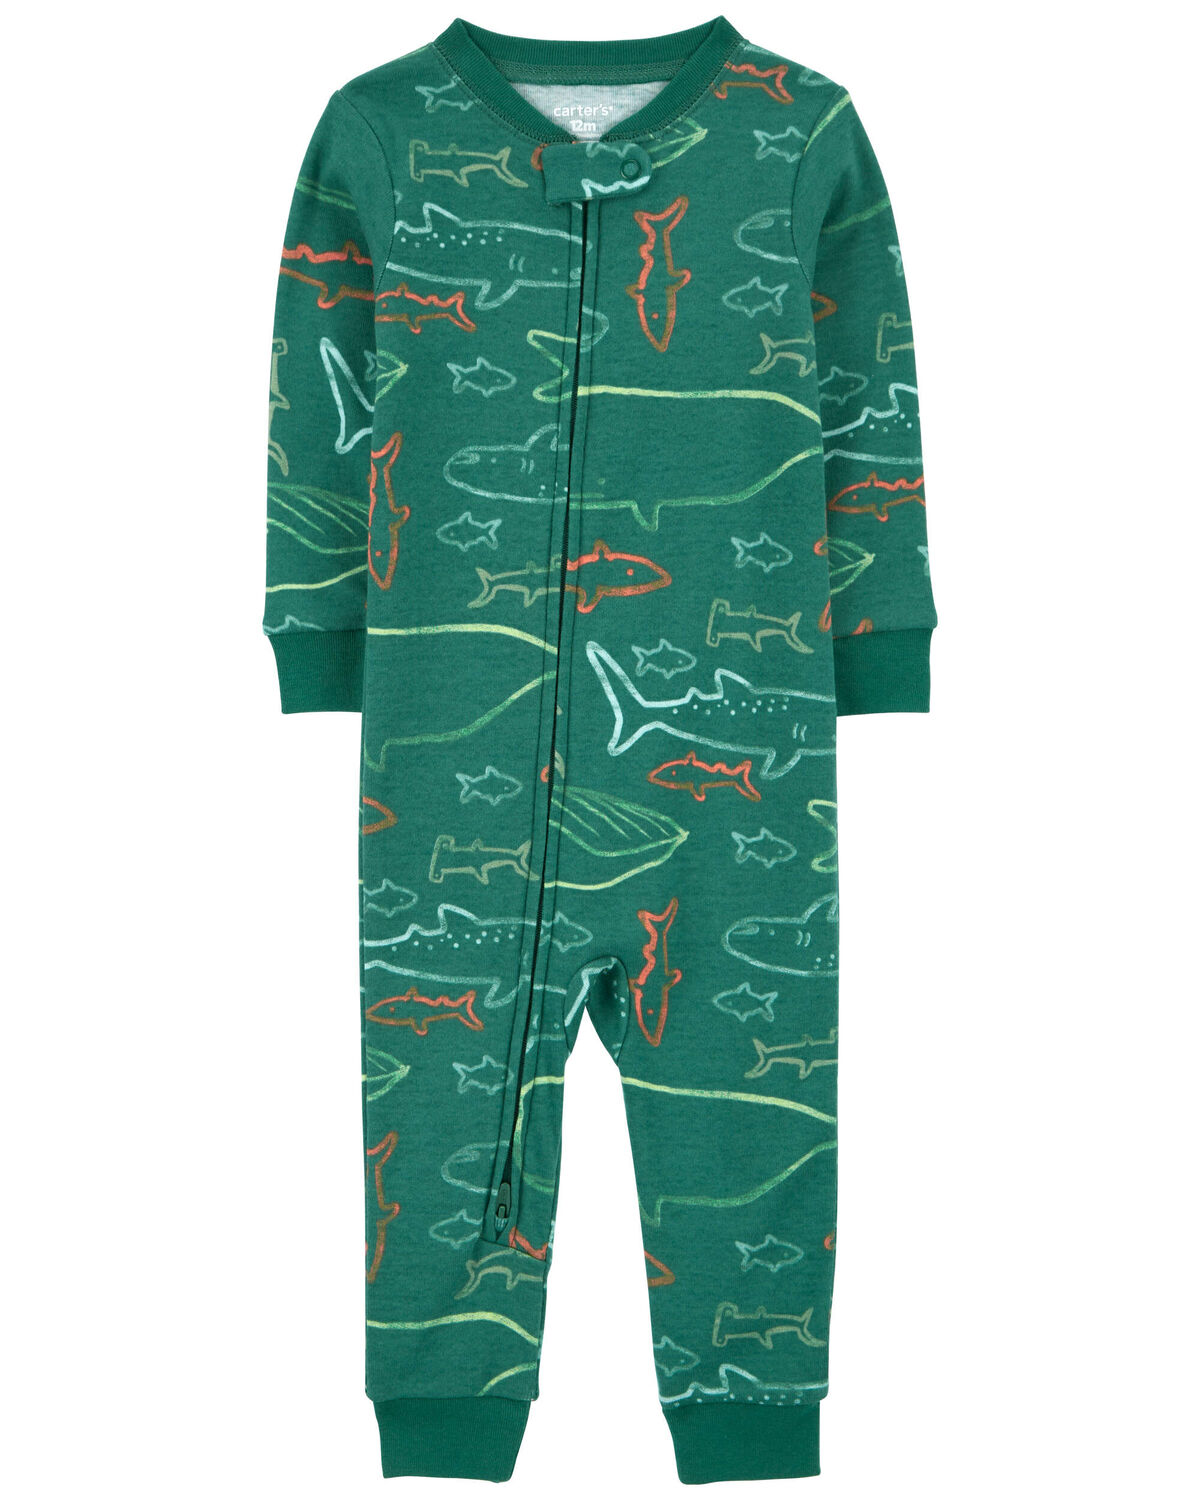 Baby 1-Piece Shark 100% Snug Fit Cotton Footless Pajamas